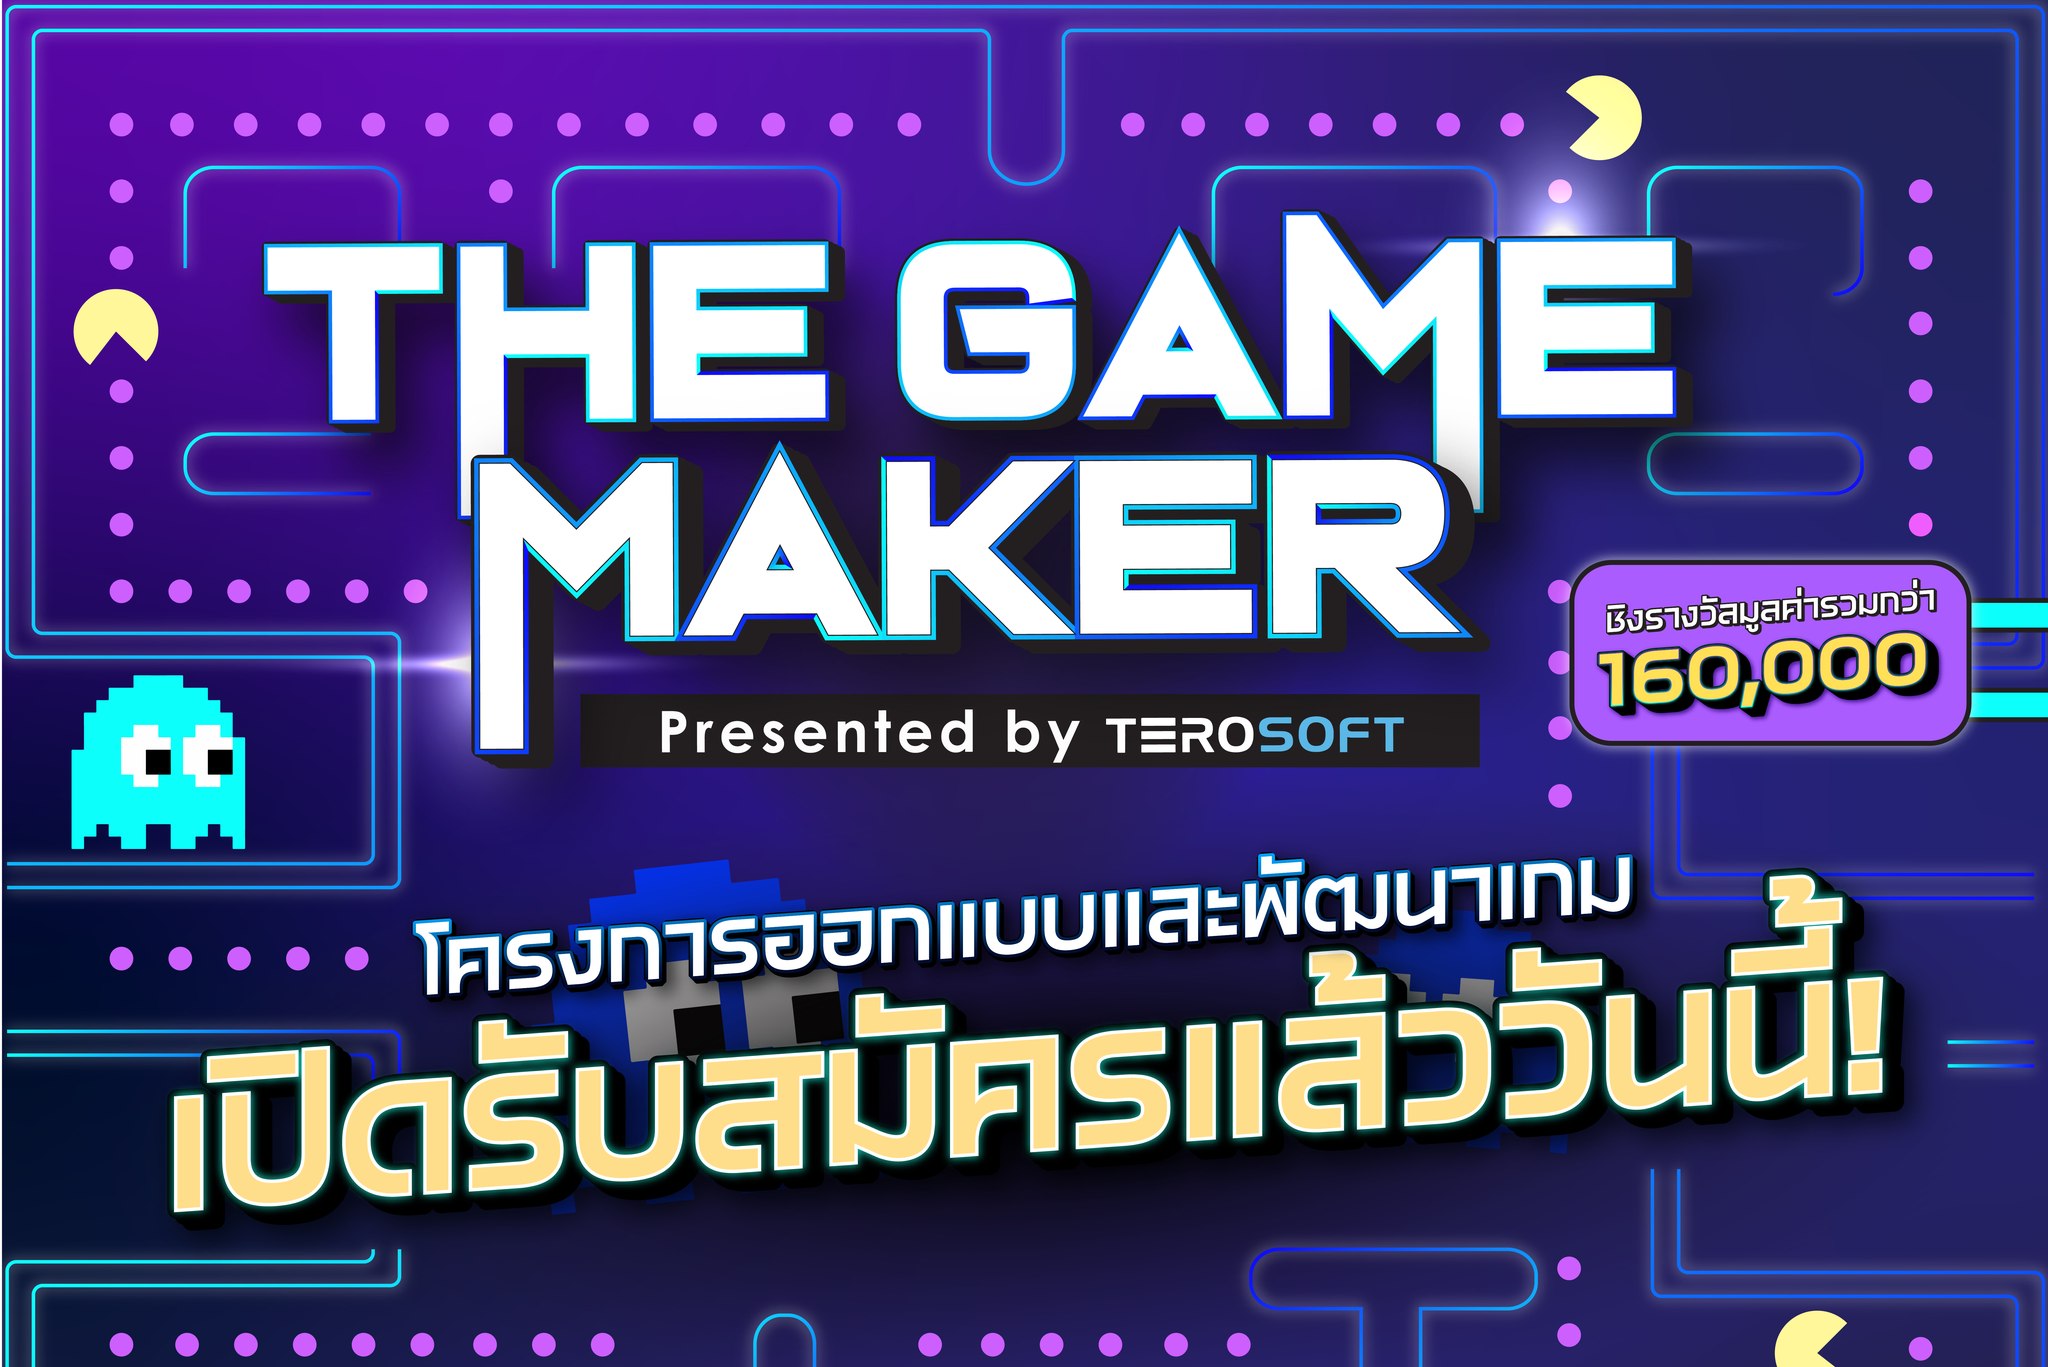 มาร่วมรันวงการเกมไทยไปด้วยกัน! The Game Maker รับสมัครนักพัฒนาเกมหน้าใหม่  โชว์ผลงาน สานฝันให้เป็นจริง ชิงรางวัลรวม 160,000 บาท